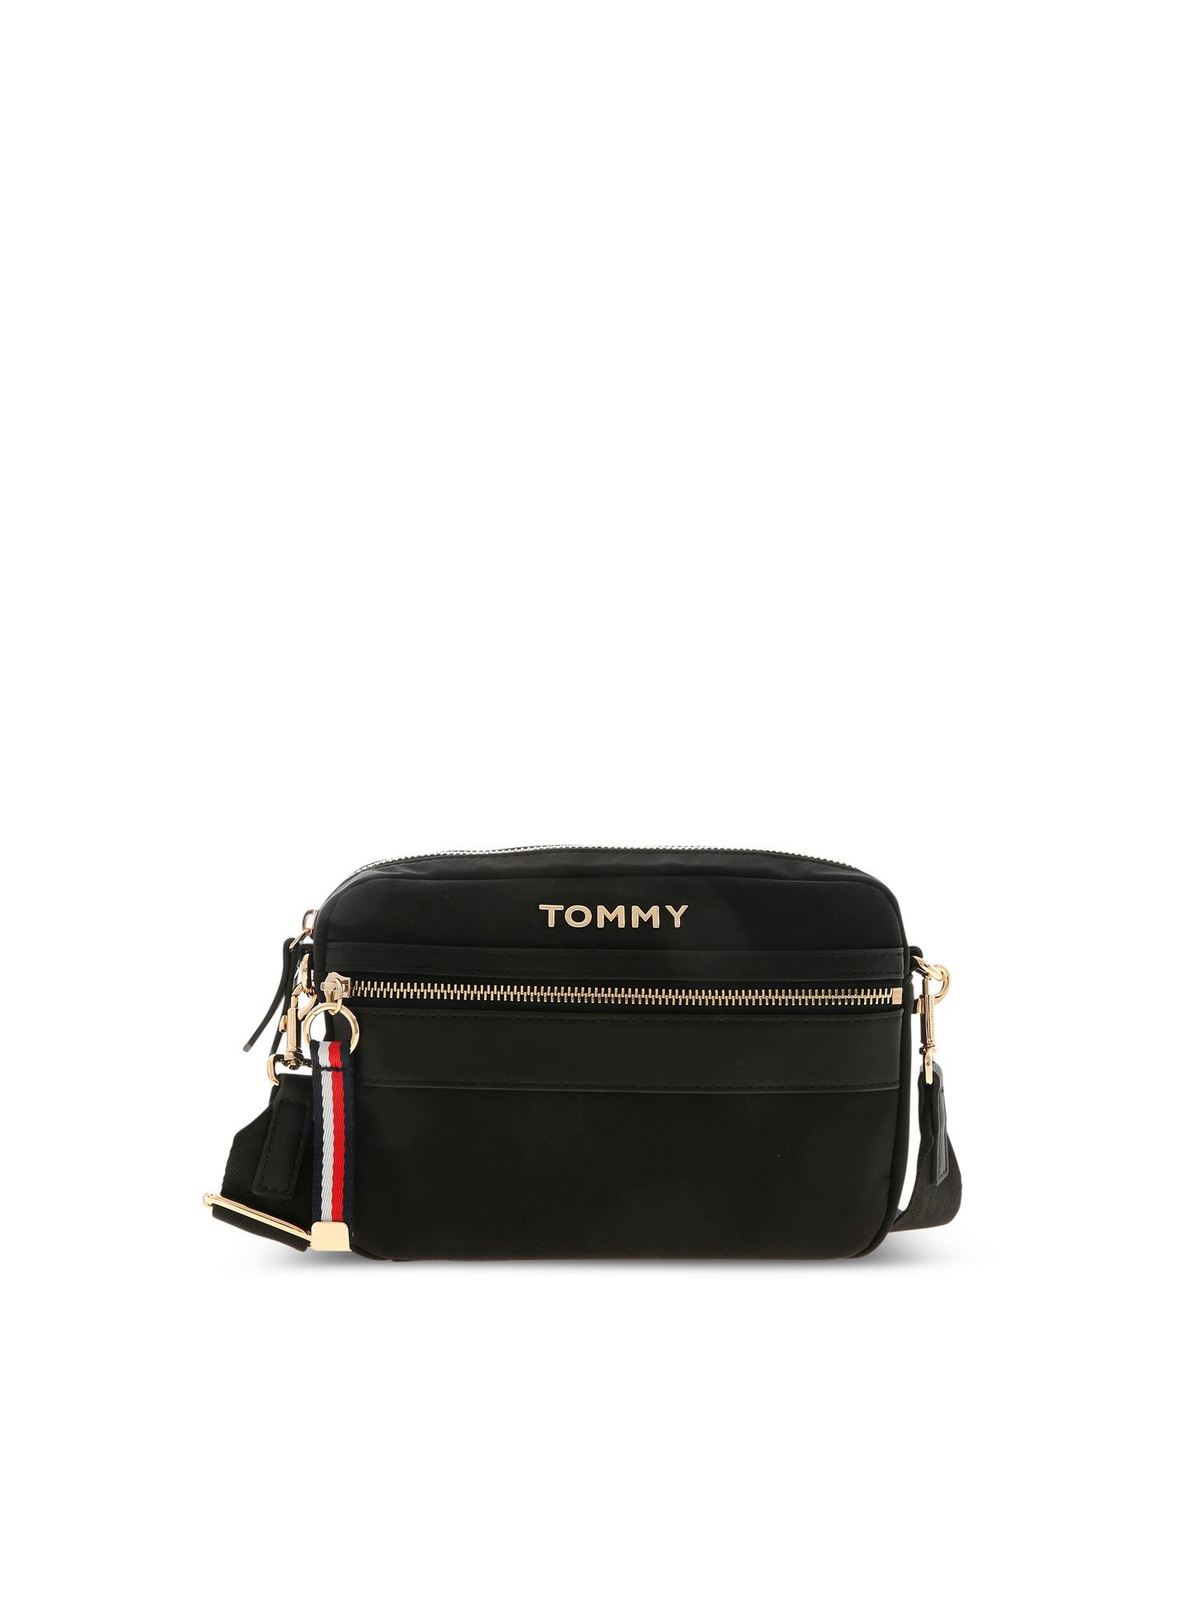 tommy hilfiger black shoulder bag